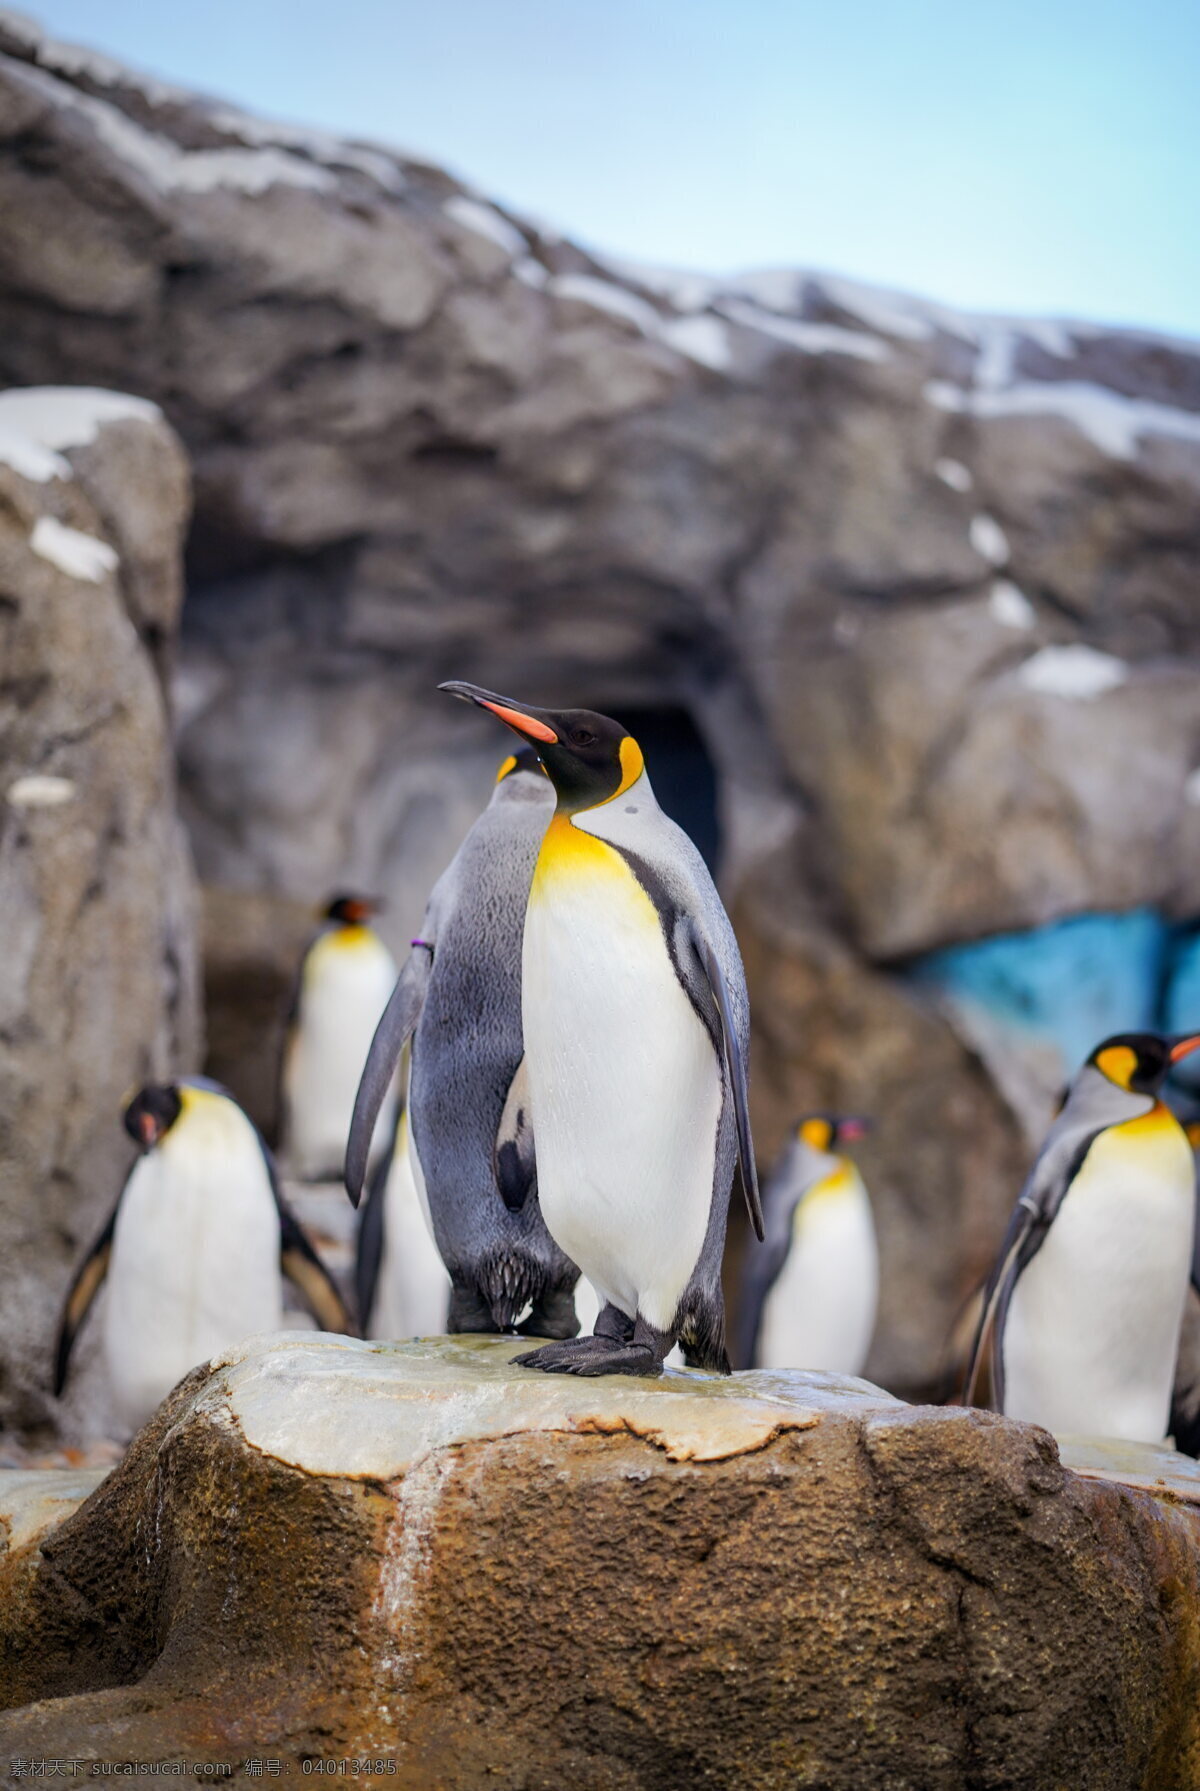 皇帝企鹅高清 皇帝企鹅 可爱企鹅 可爱 萌萌哒 帝企鹅 南极动物 保护动物 生物世界 图片大全 高清图片下载 共享素材 野生动物